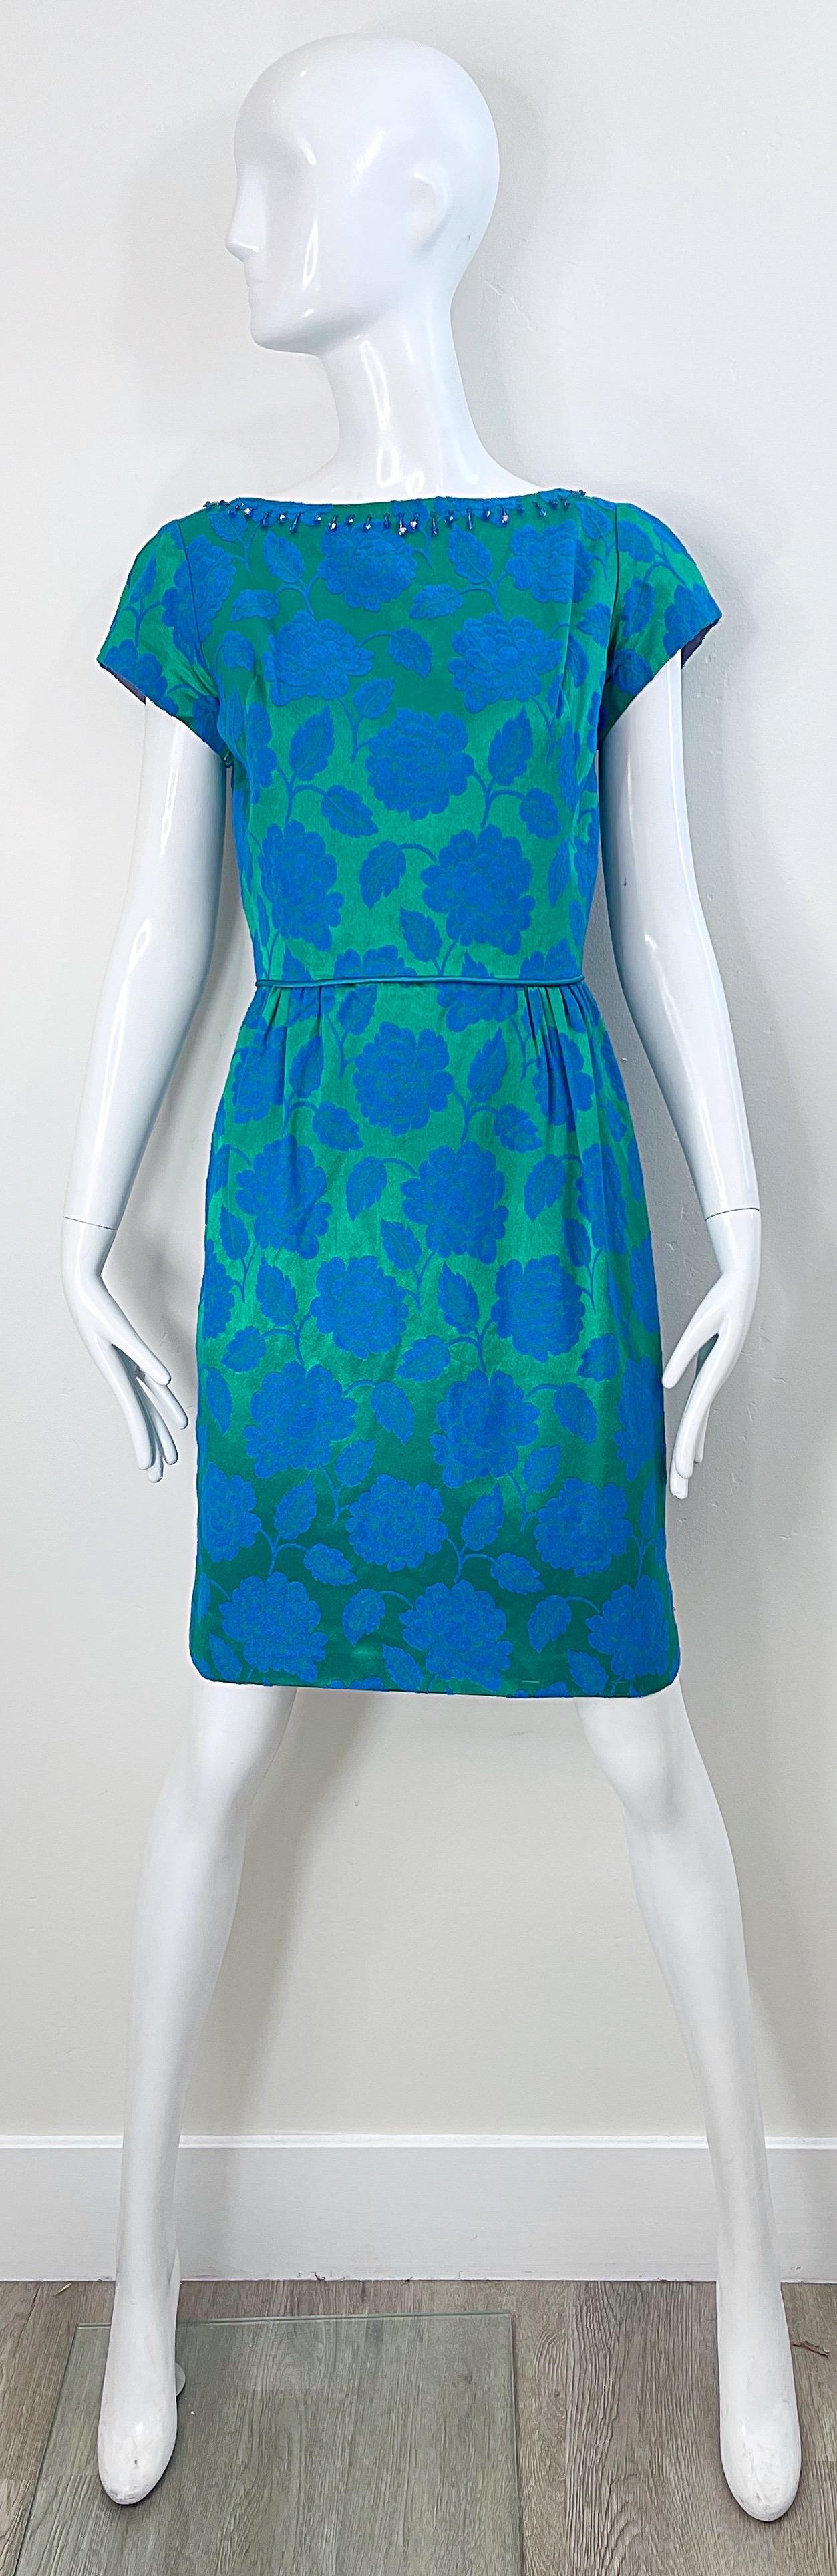 Magnifique robe fourreau du début des années 60 en soie damassée bleue et verte à imprimé floral, manches courtes et perles ! Le luxueux tissu en soie présente juste ce qu'il faut de brillance. Perles bleues autour du cou et du dos. Fermeture à